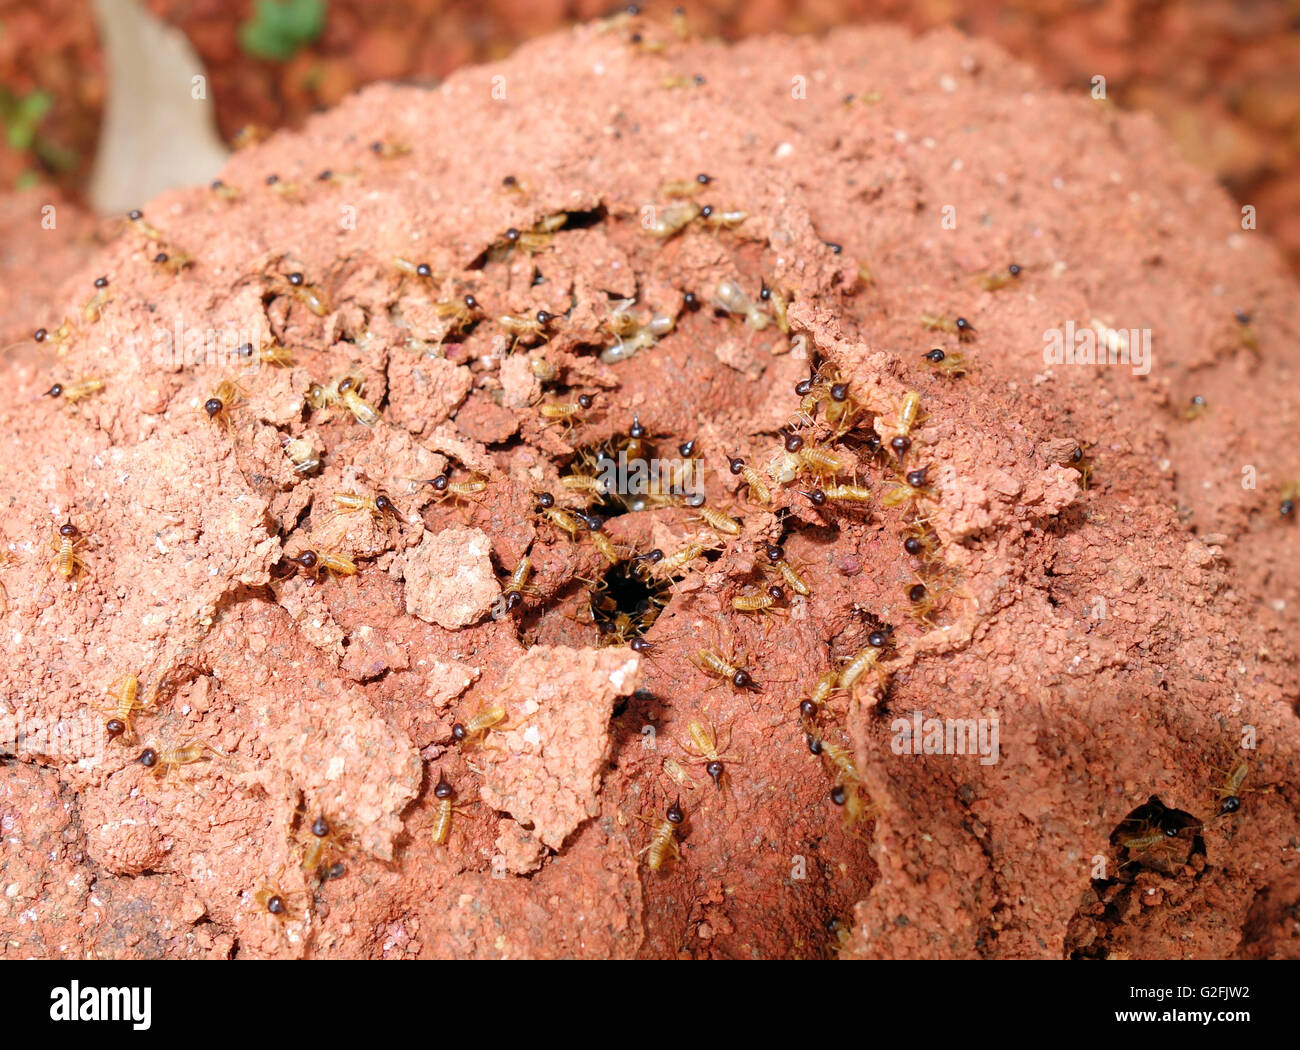 Les termites début des réparations aux dommages à la paroi externe mound, Cape York Peninsula, Queensland, Australie Banque D'Images